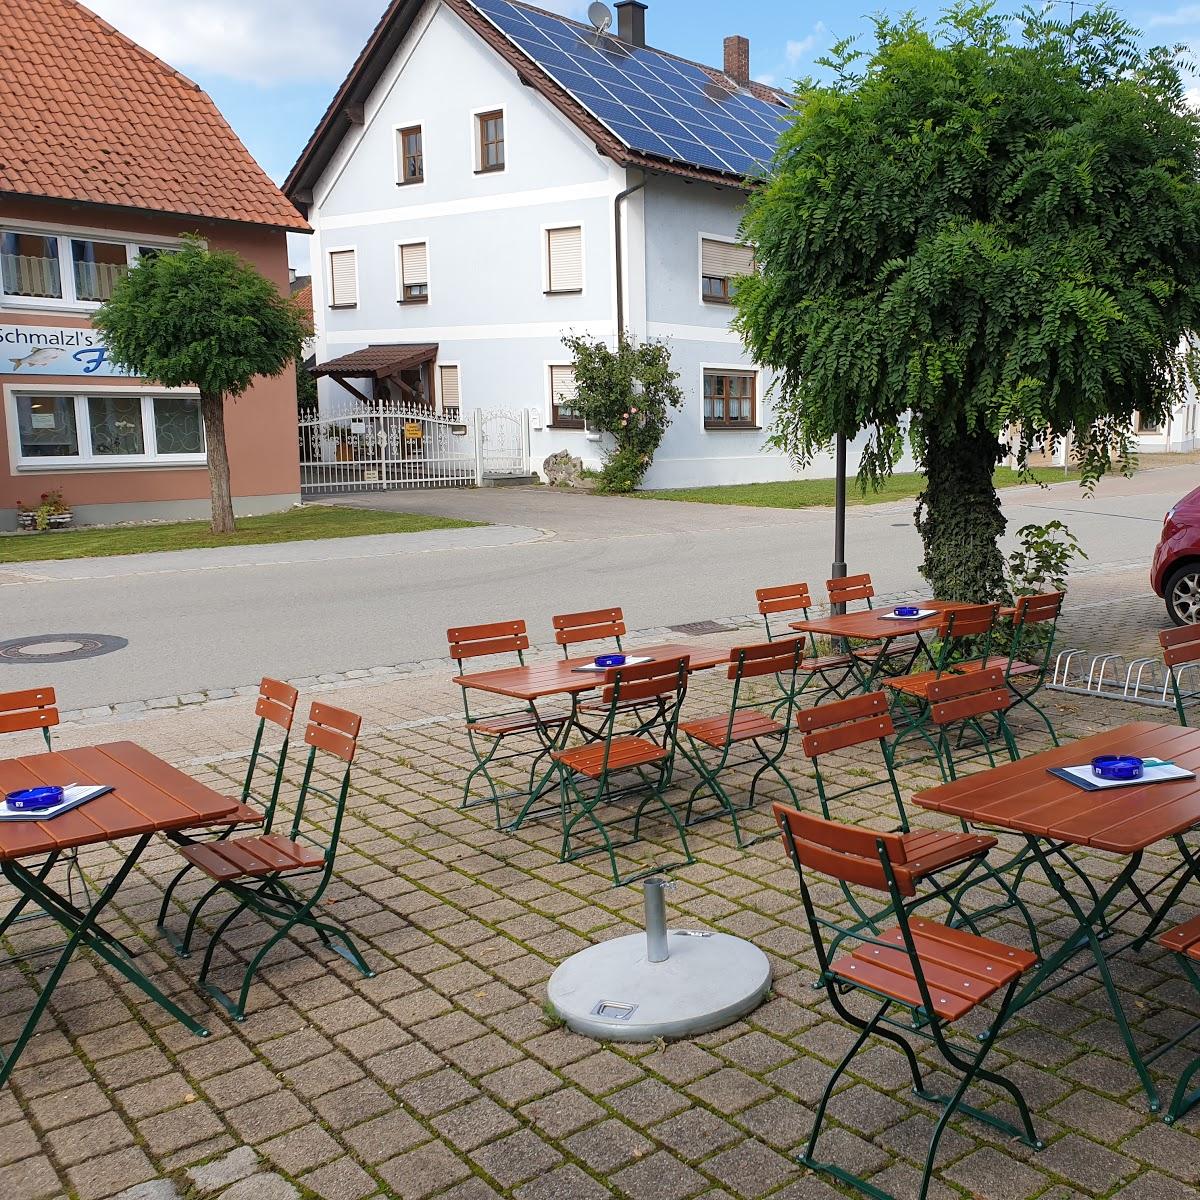 Restaurant "Gasthof Fischer" in Pfatter